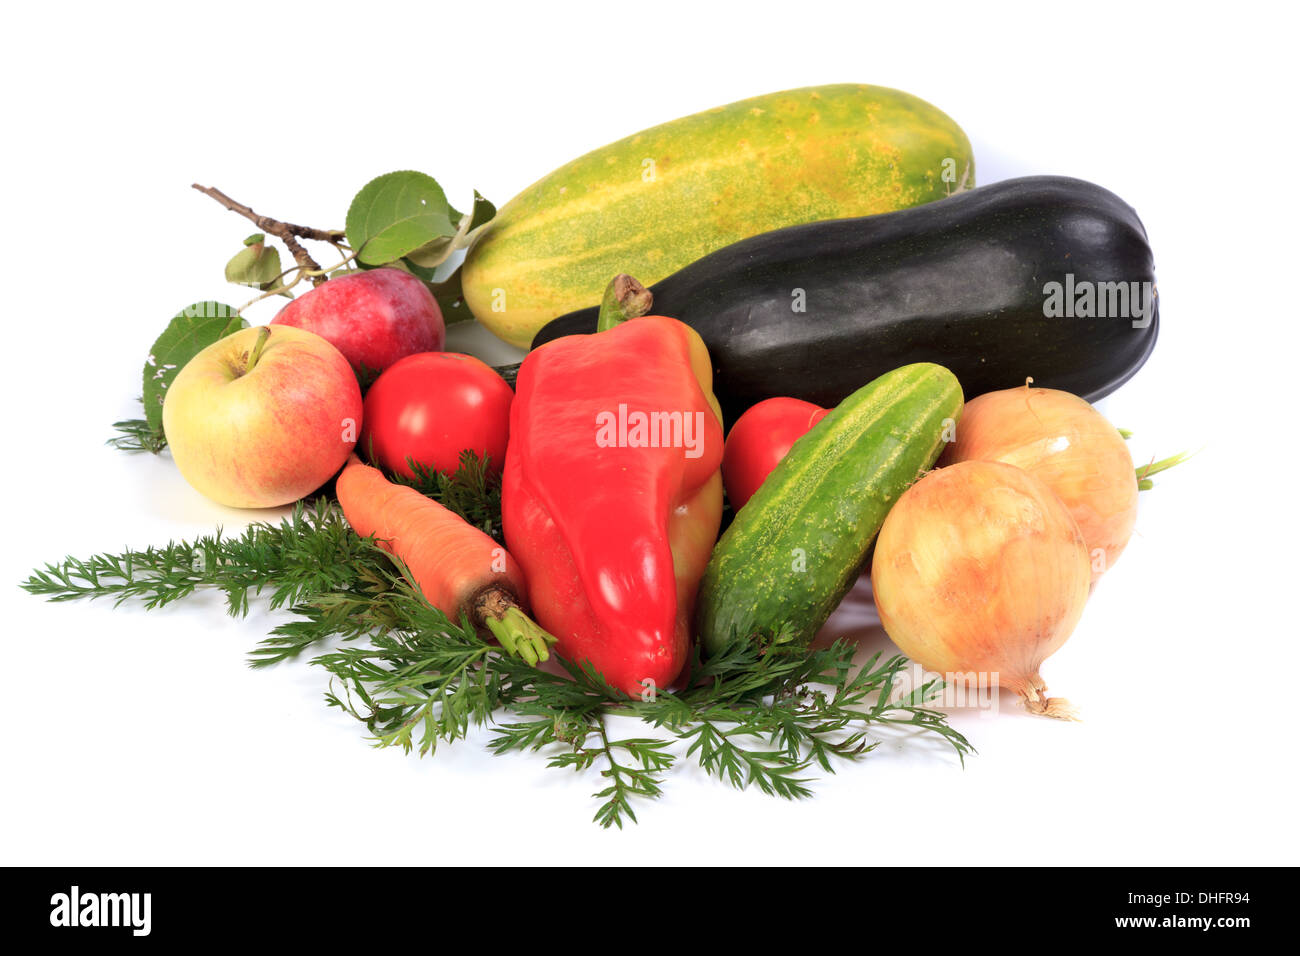 Obst und Gemüse auf einem weißen Hintergrund. Studio-Fotografie. Denisovo, Oblast Rjasan, Pronsky-Bereich. Russland Stockfoto